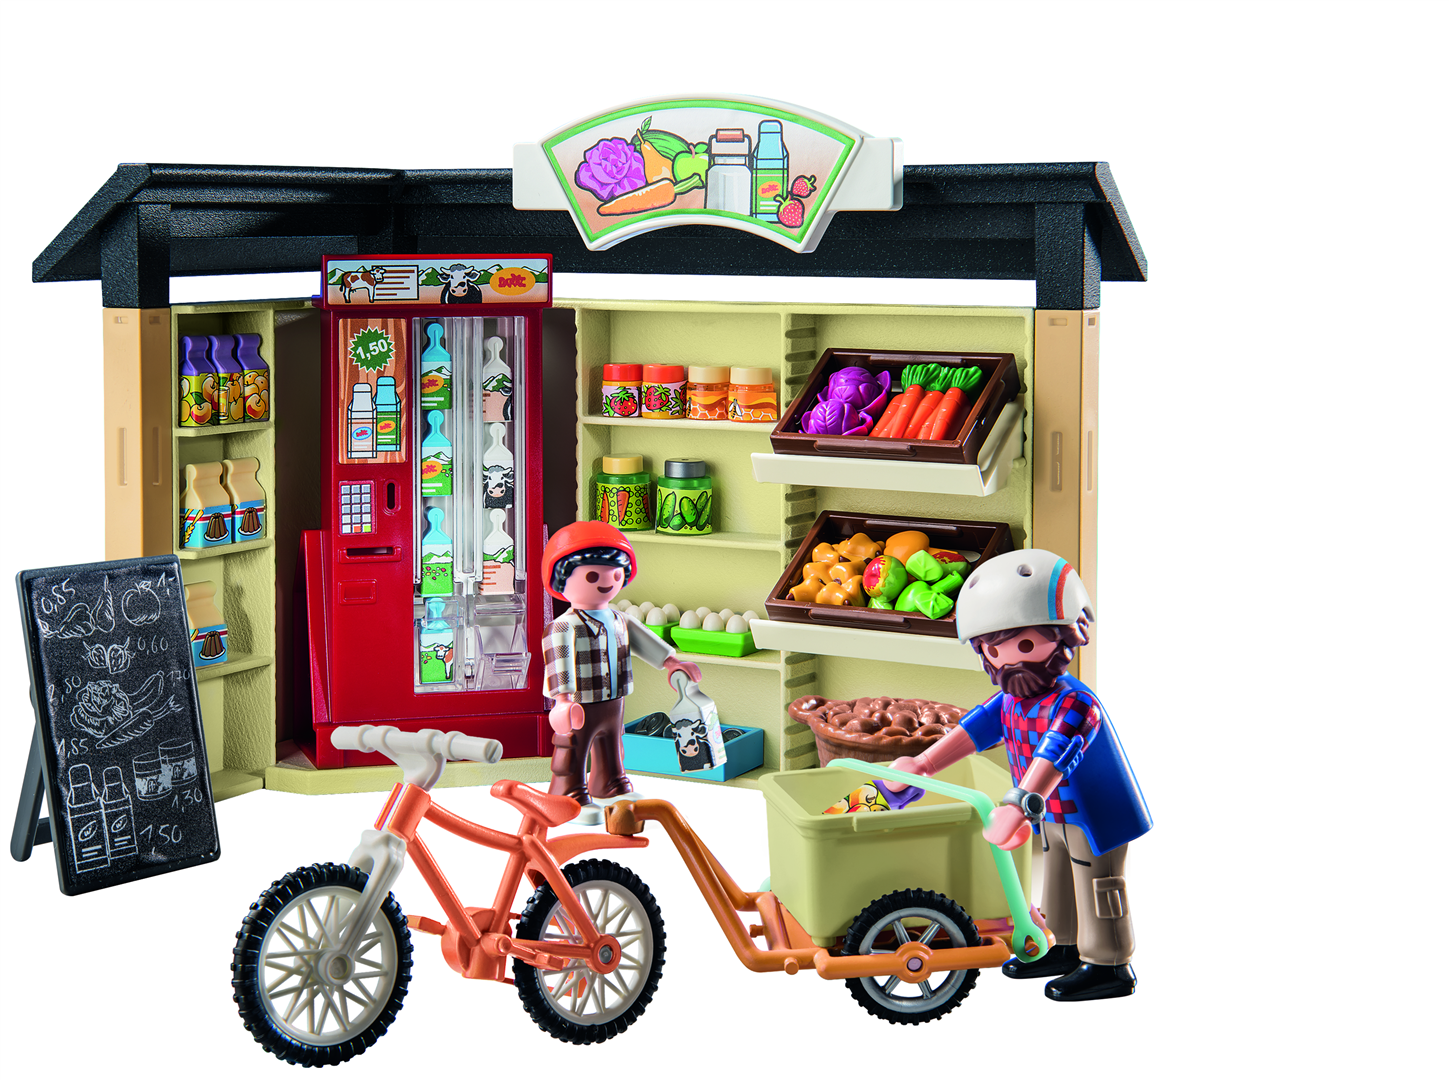 Playmobil country 71250 bottega agricola aperta 24 ore su 24 per bambini dai 4 anni in su - Playmobil